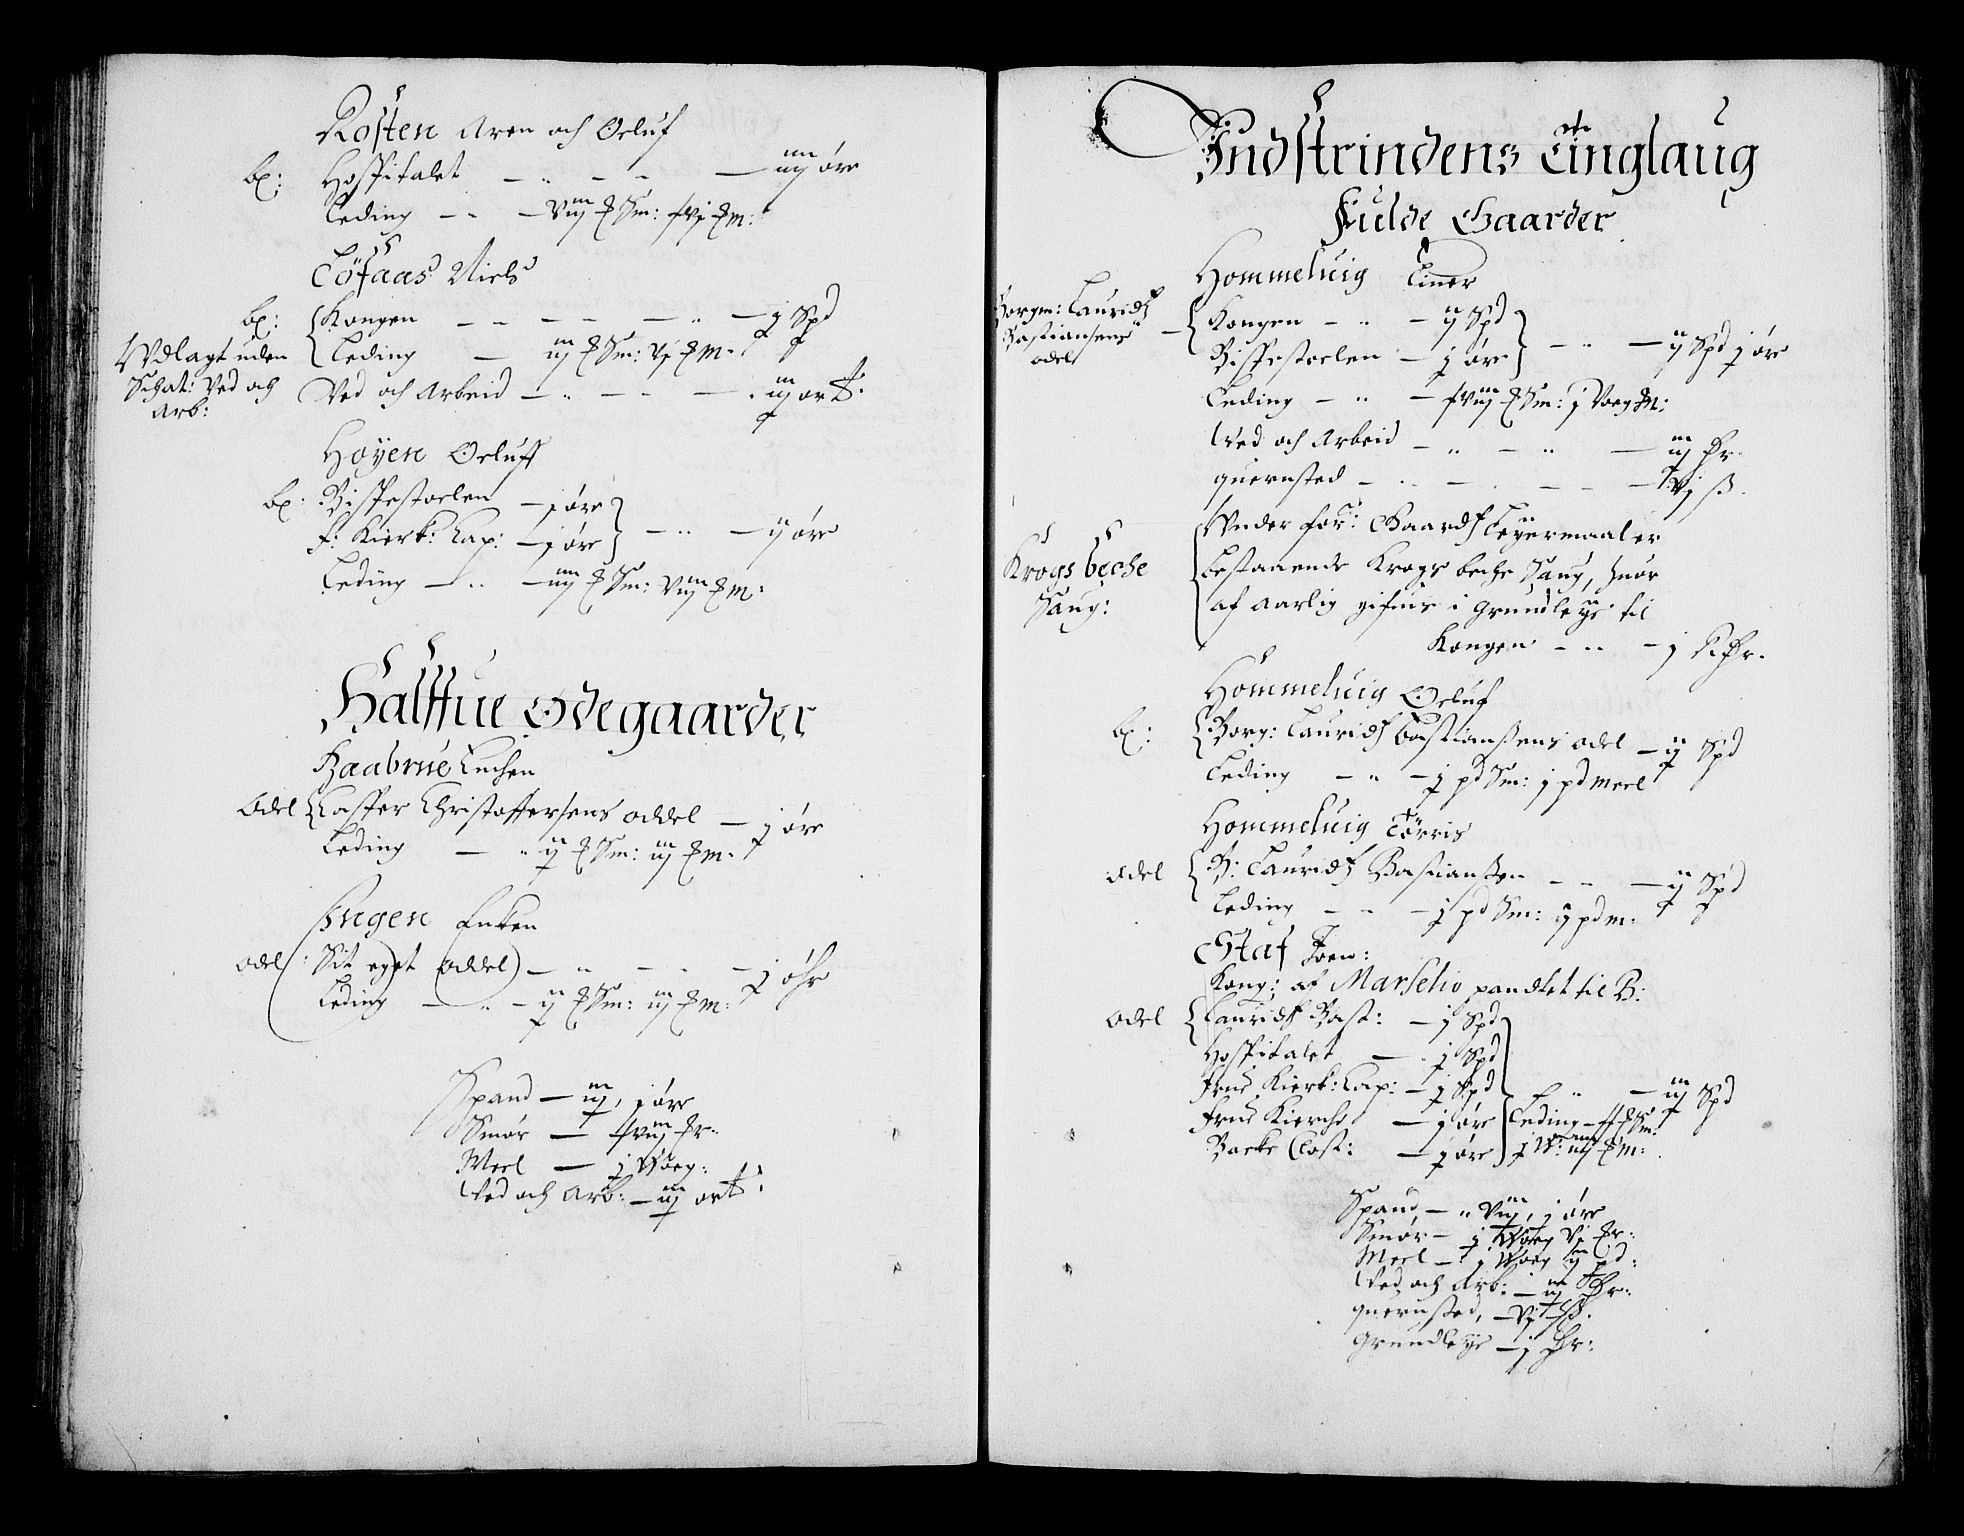 Rentekammeret inntil 1814, Realistisk ordnet avdeling, RA/EA-4070/N/Na/L0002/0005: [XI g]: Trondheims stifts jordebøker: / Strinda fogderi, 1664